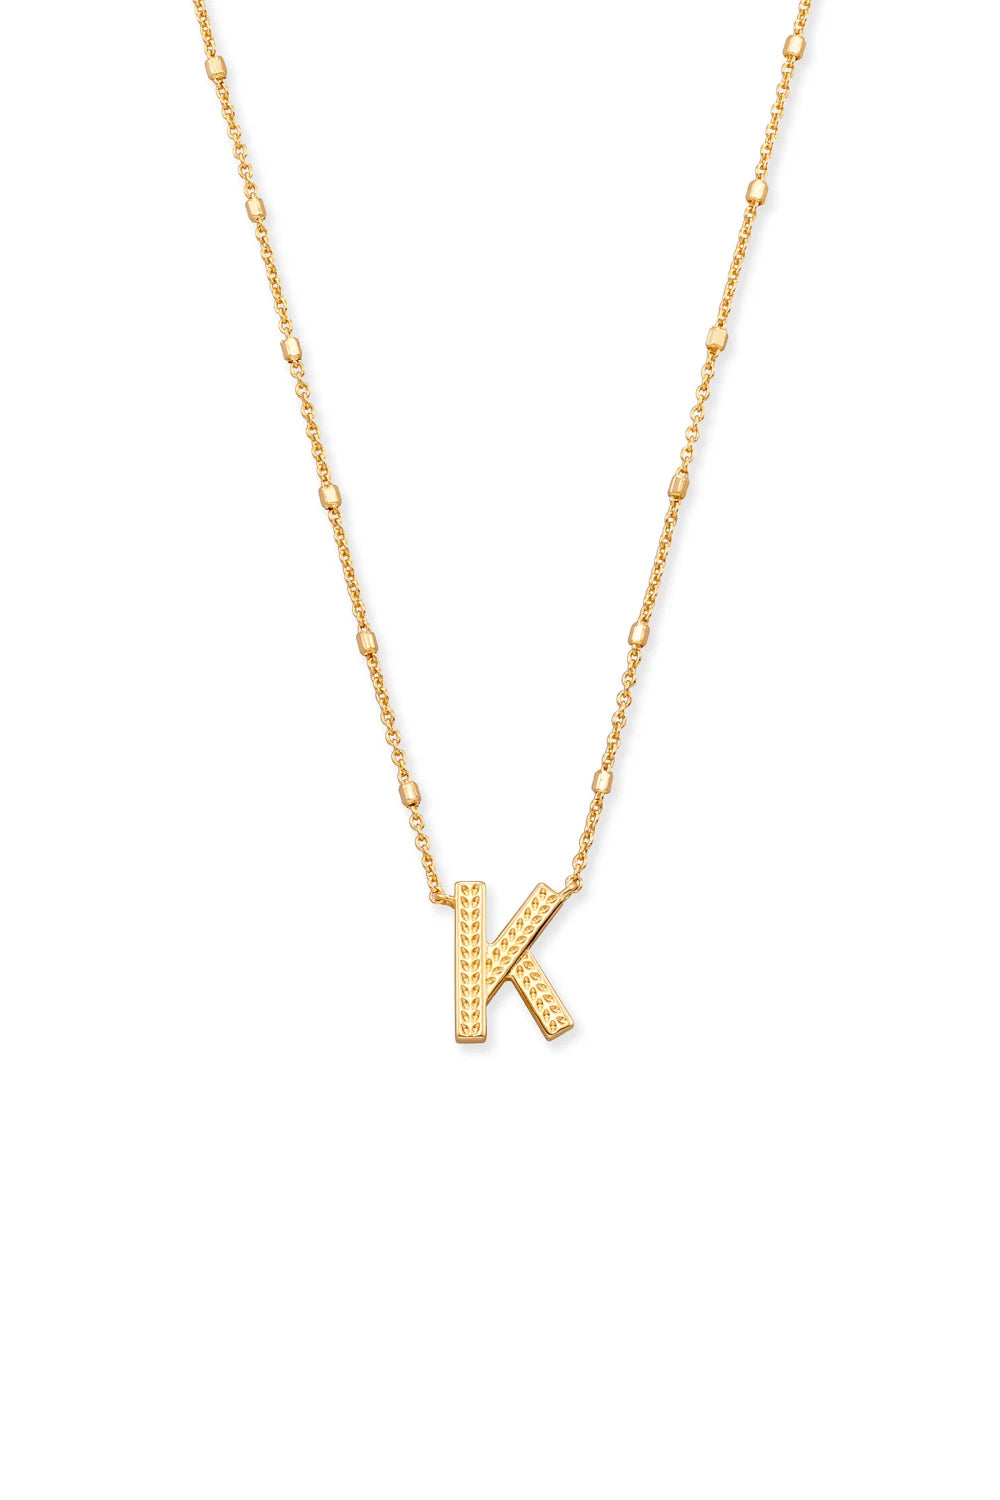 Kendra Scott: Letter K Pendant Necklace - Gold | Makk Fashions